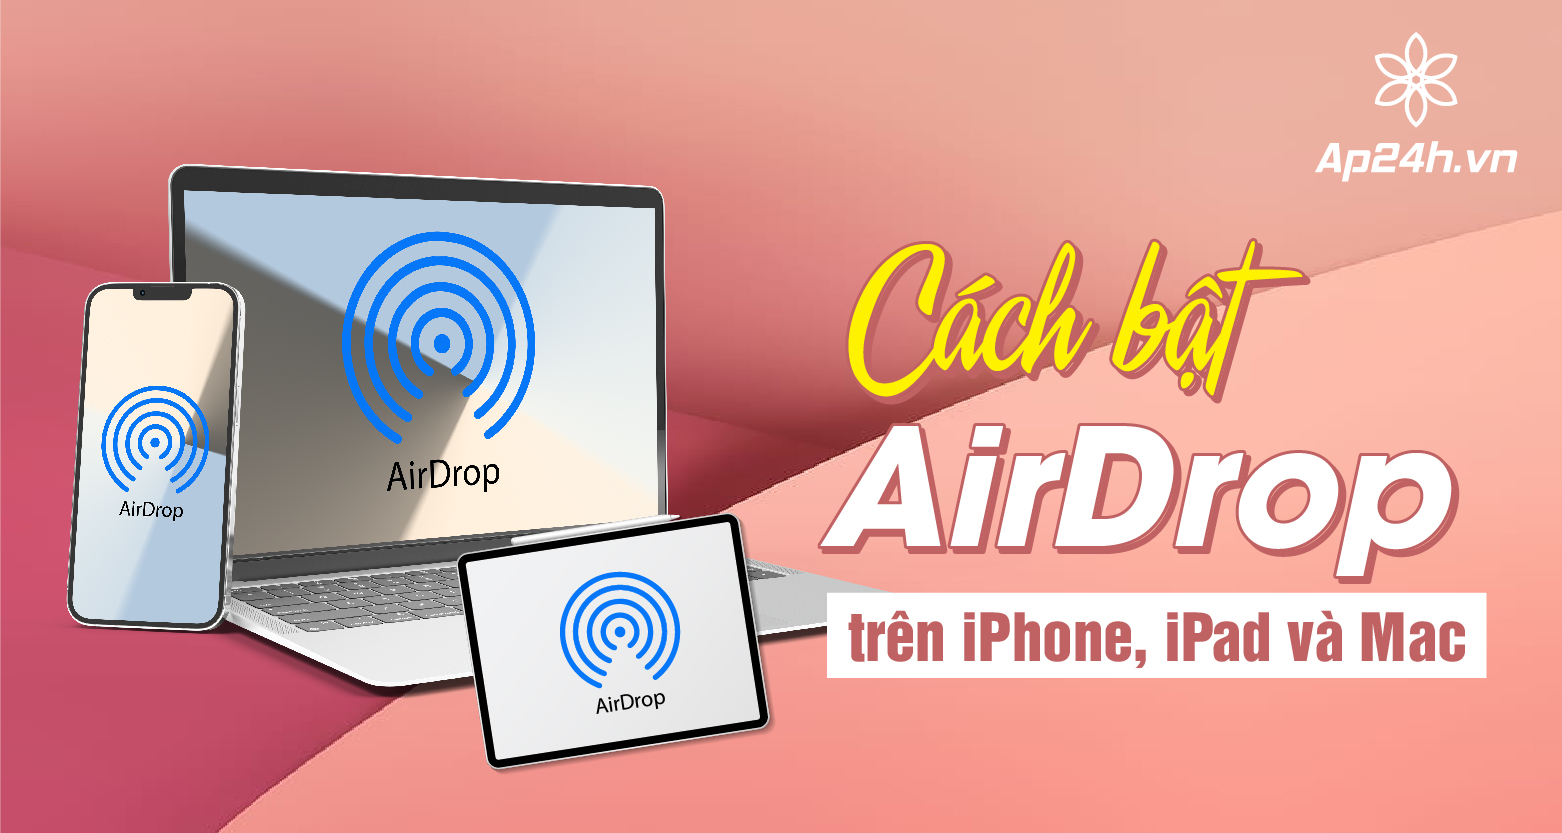 TỔNG HỢP]- Cách bật AirDrop trên iPhone, iPad và Mac